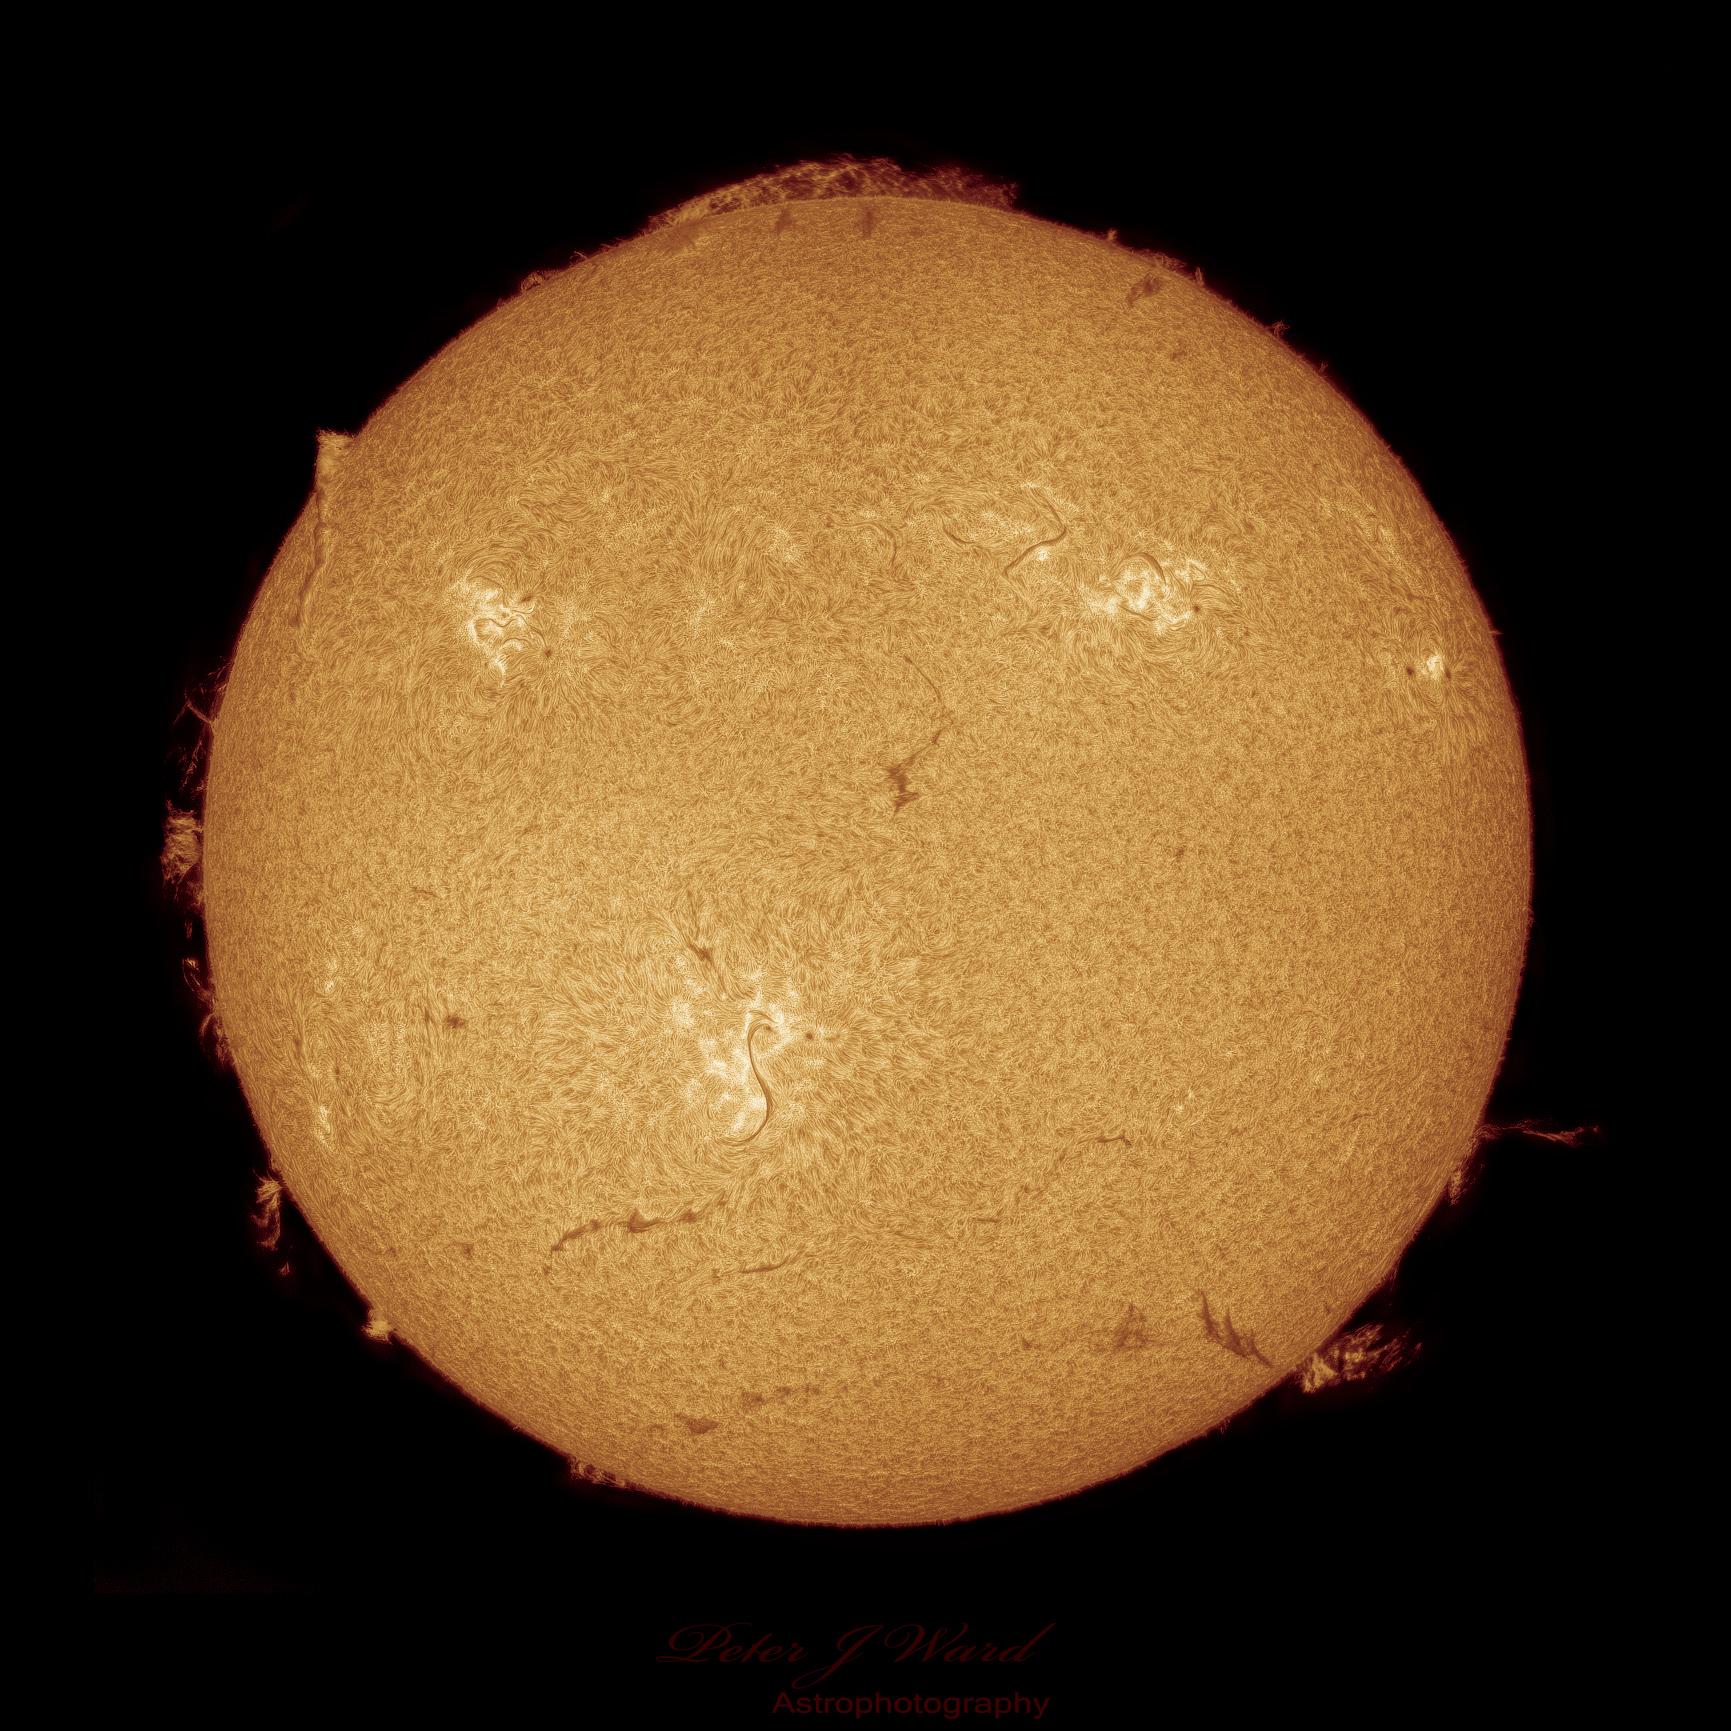 صورة حادّة التفاصيل لقرص الشمس تظهر فيها بقعٌ شمسيّة، ولطخاتٌ ضوئيّة، وخيوطٌ شمسيّة تتلوّى كالأفعى عبر قرص الشمس وتتحوّل إلى شواظاتٍ شمسيّة عند رؤيتها فوق الطرف الشمسي